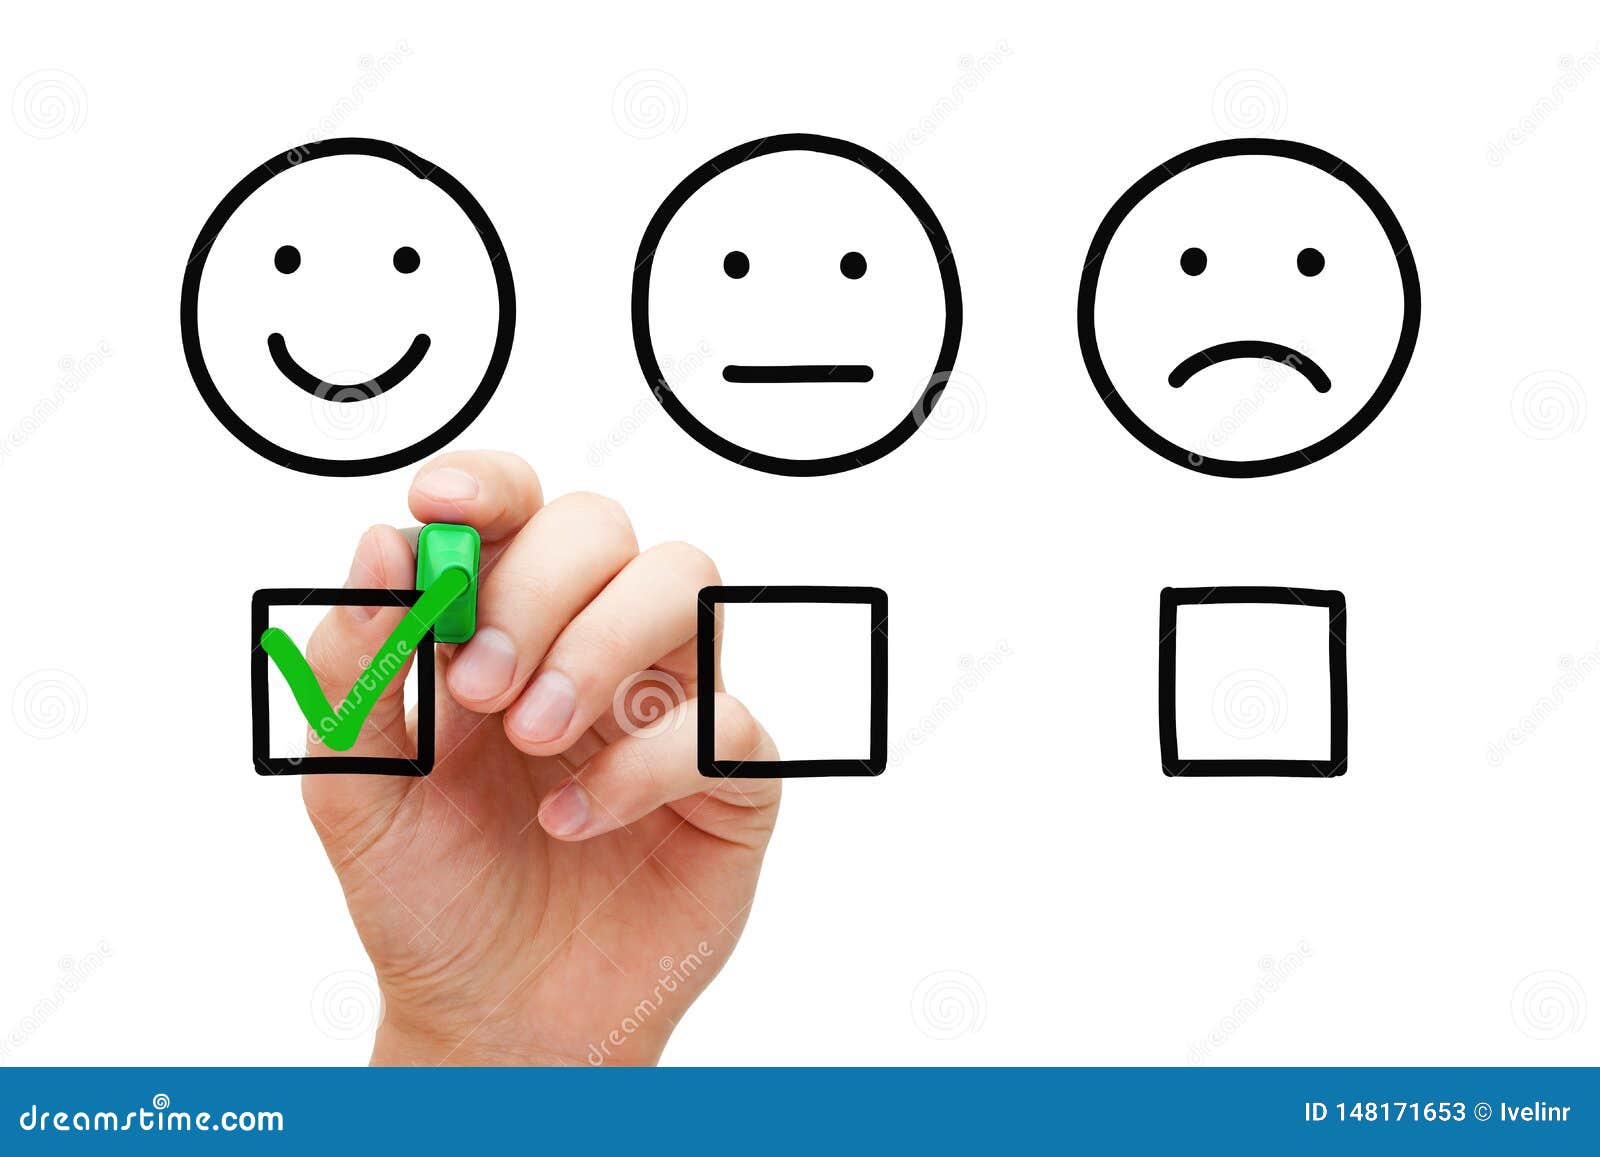 happy customer feedback survey concept